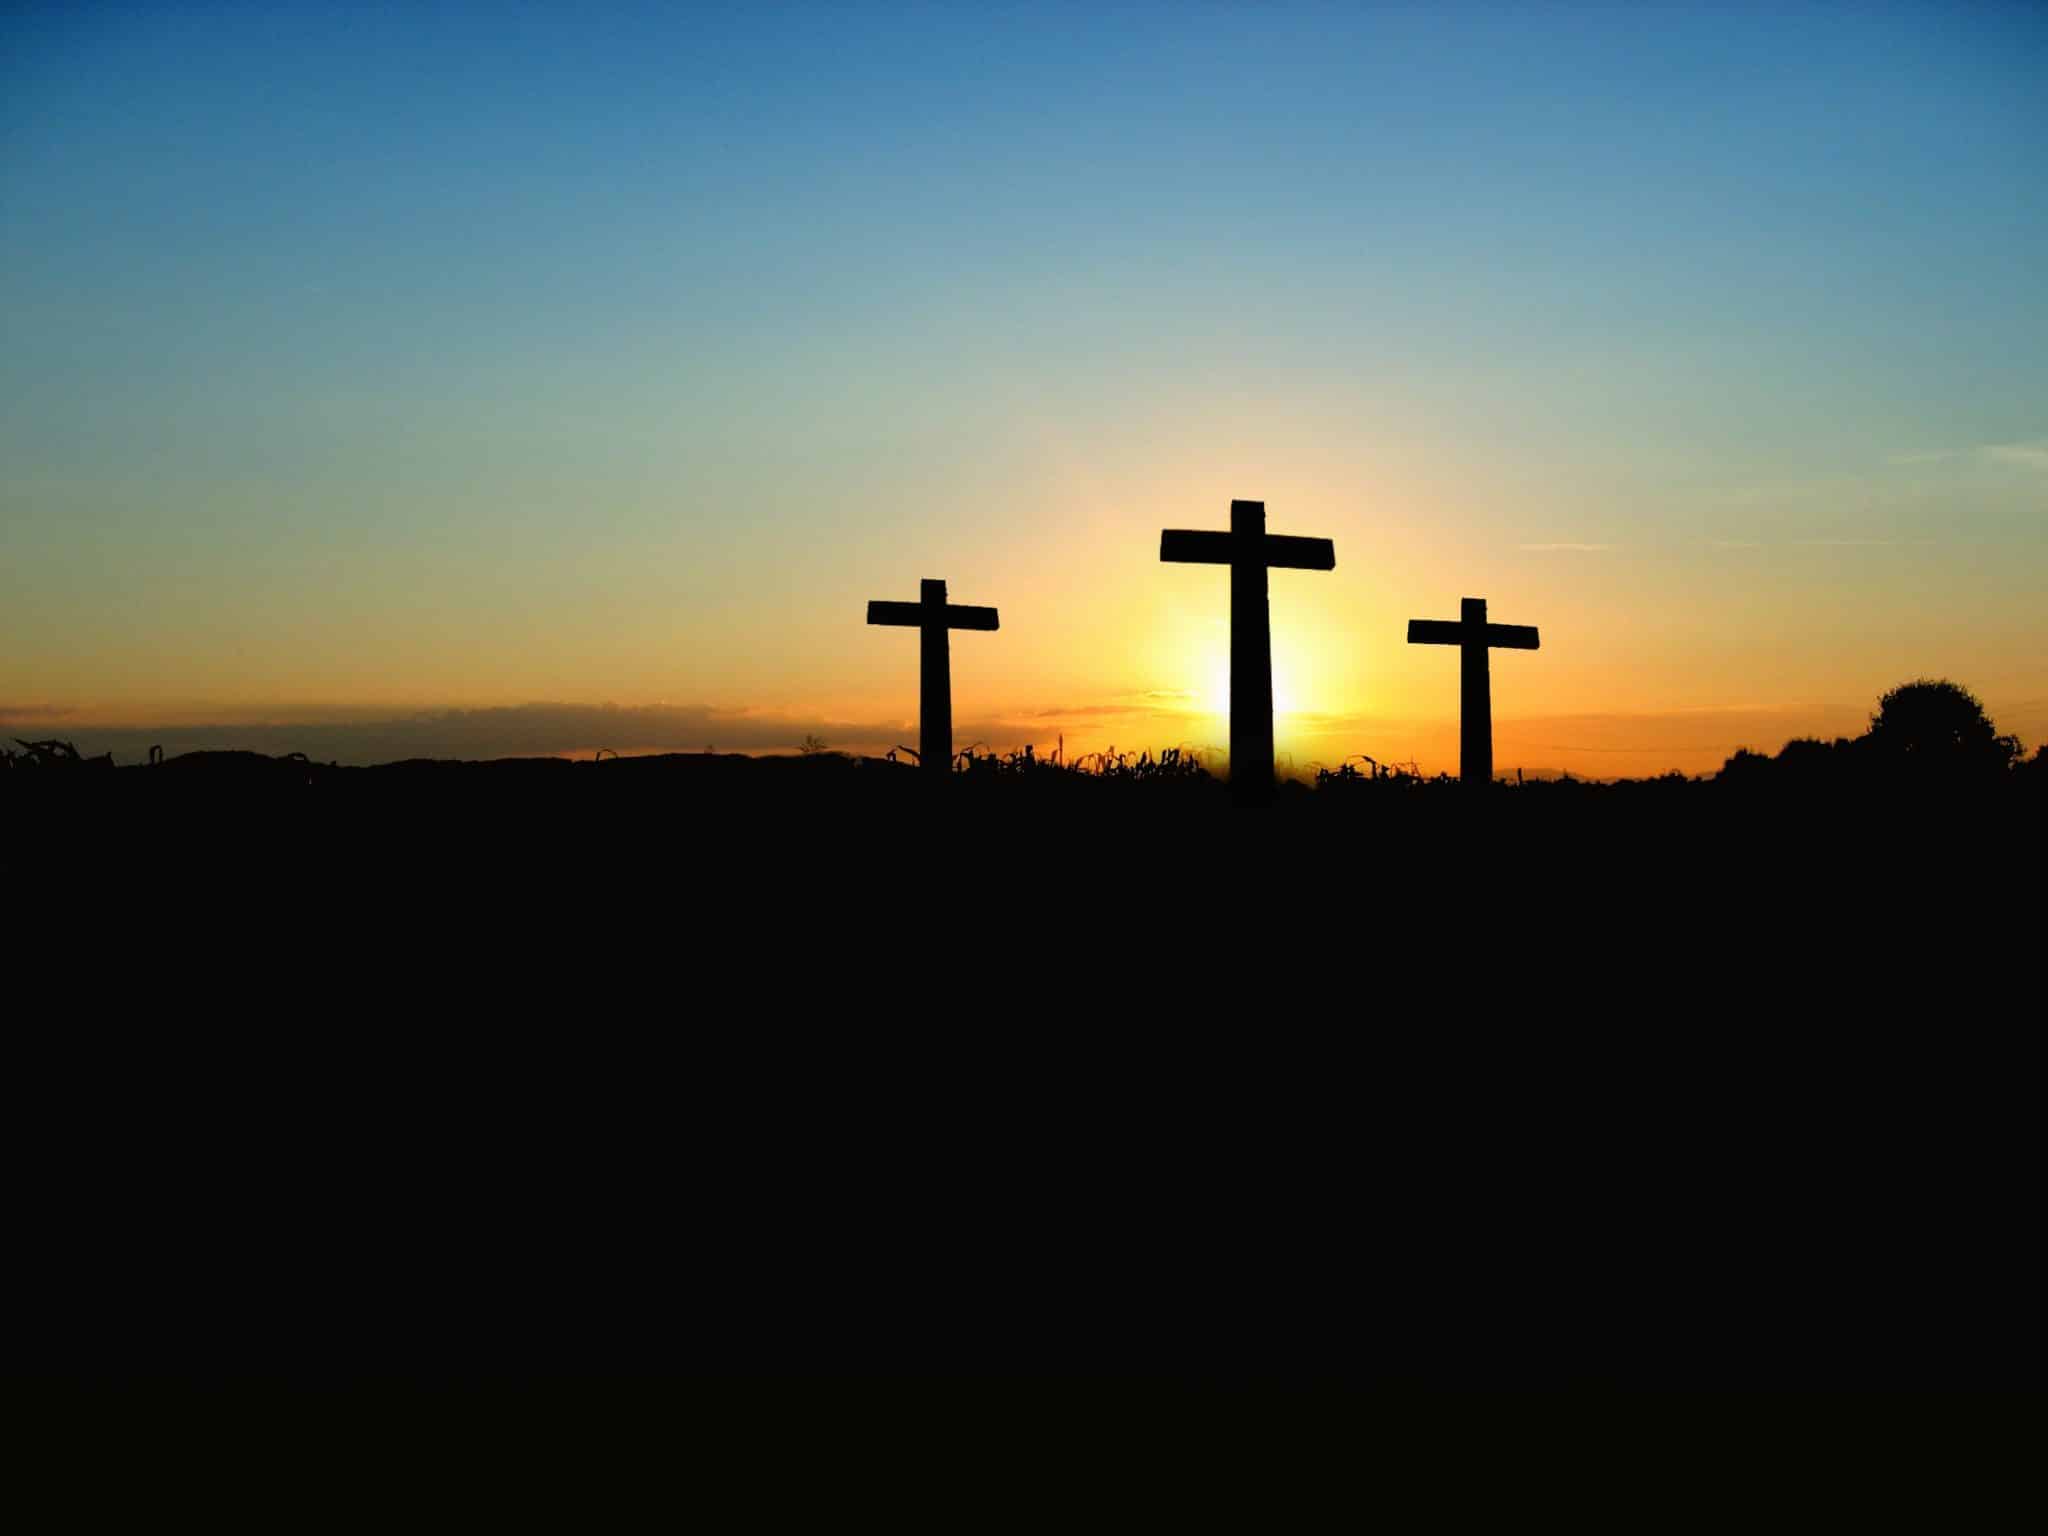 3 Christian crosses at dawn